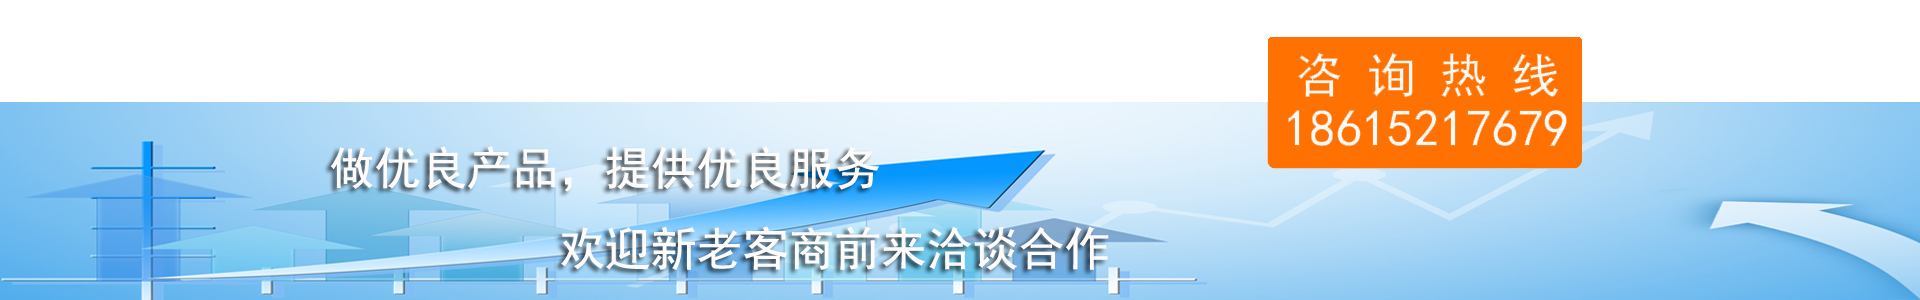 雅博官网（中国）有限公司做优质产品,提供优质服务,欢迎新老商家前来洽谈合作,咨询热线18615217679